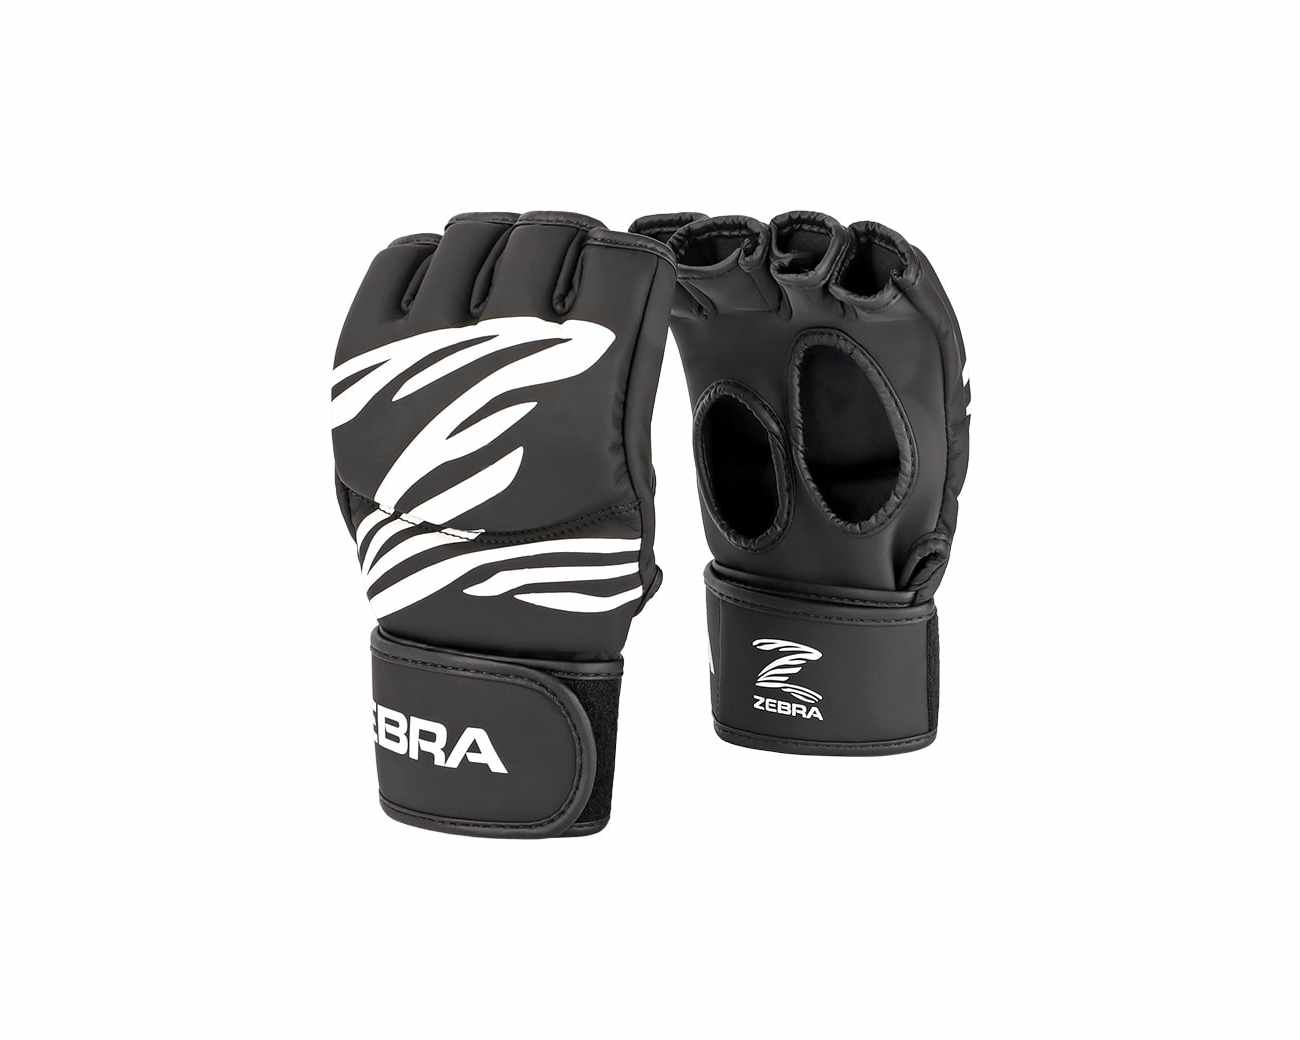 ZEBRA-FITNESS-Training-Gloves-3